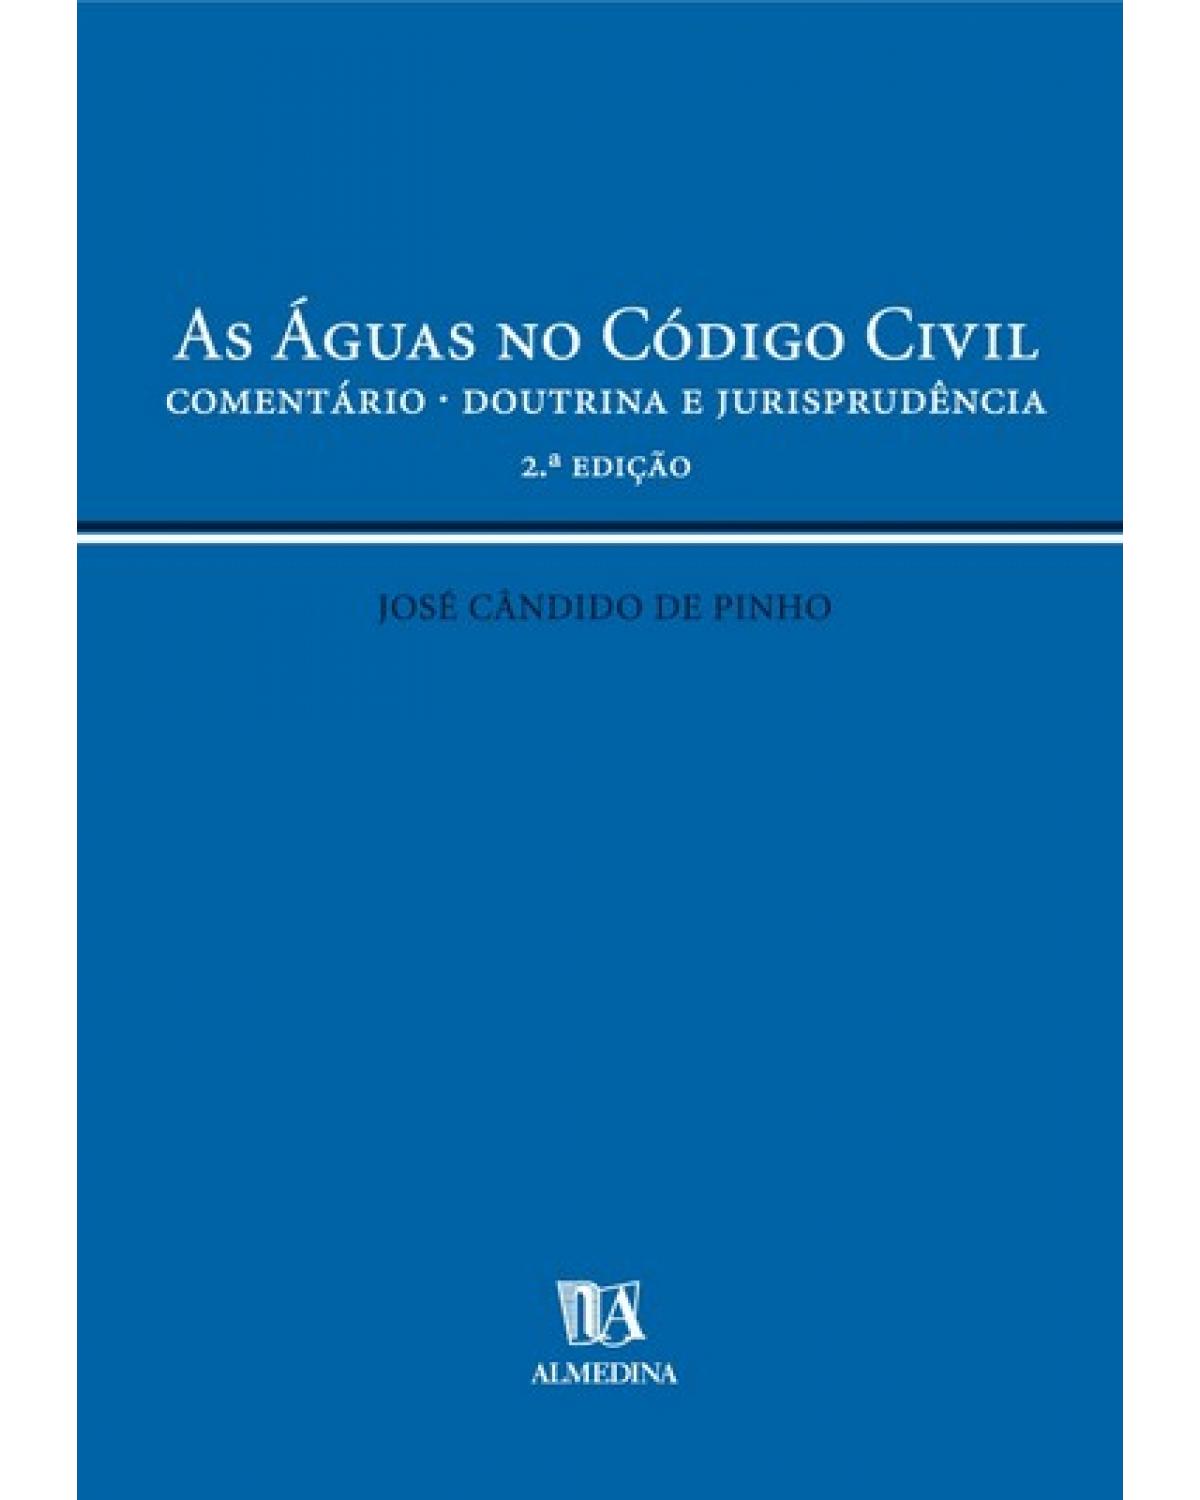 As águas no código civil: comentário - Doutrina e jurisprudência - 2ª Edição | 2005